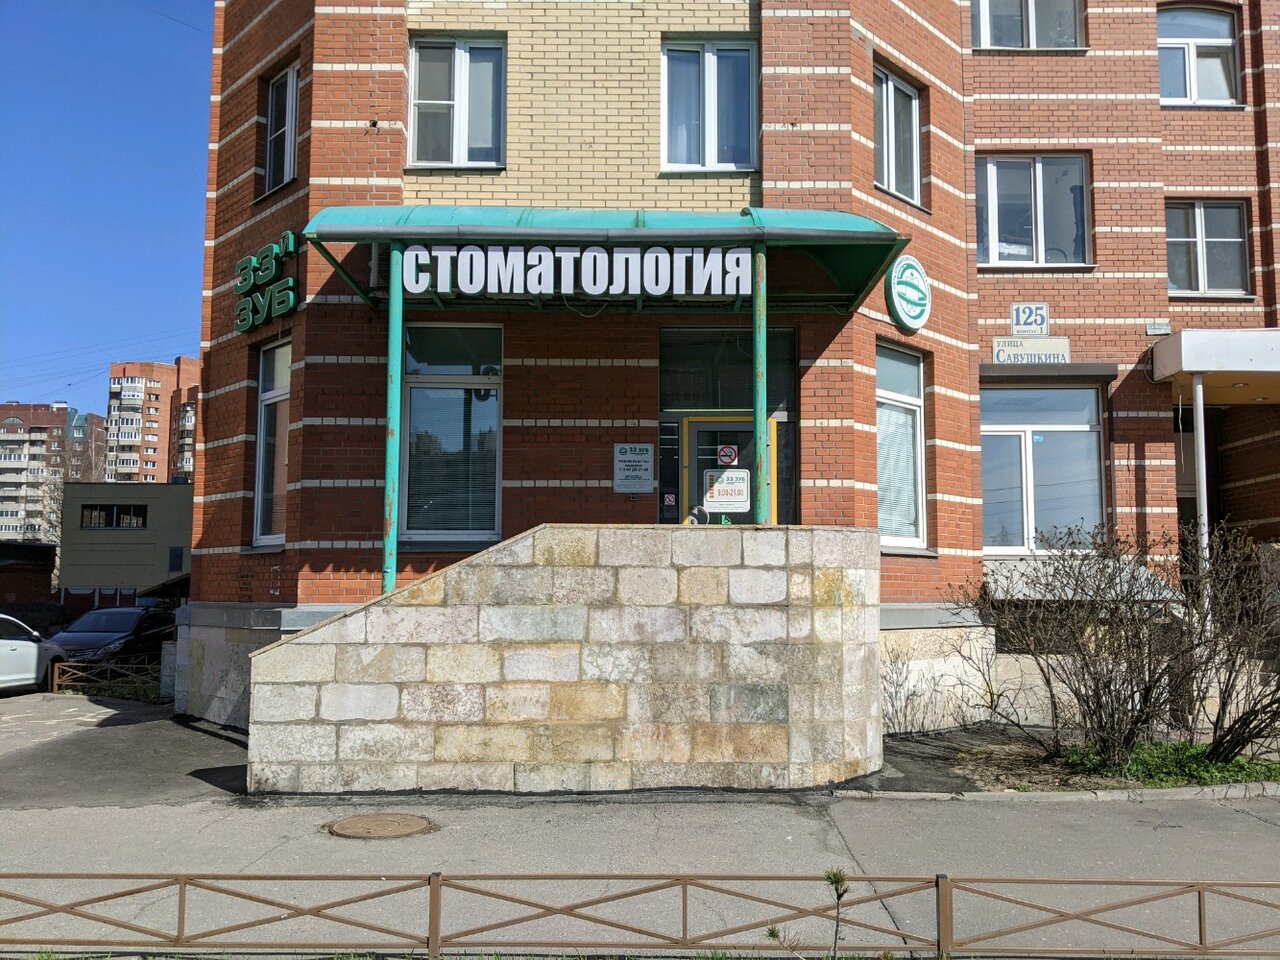 Стоматологическая клиника 33-й Зуб, Казань, ул. Савушкина, 125 корпус 1